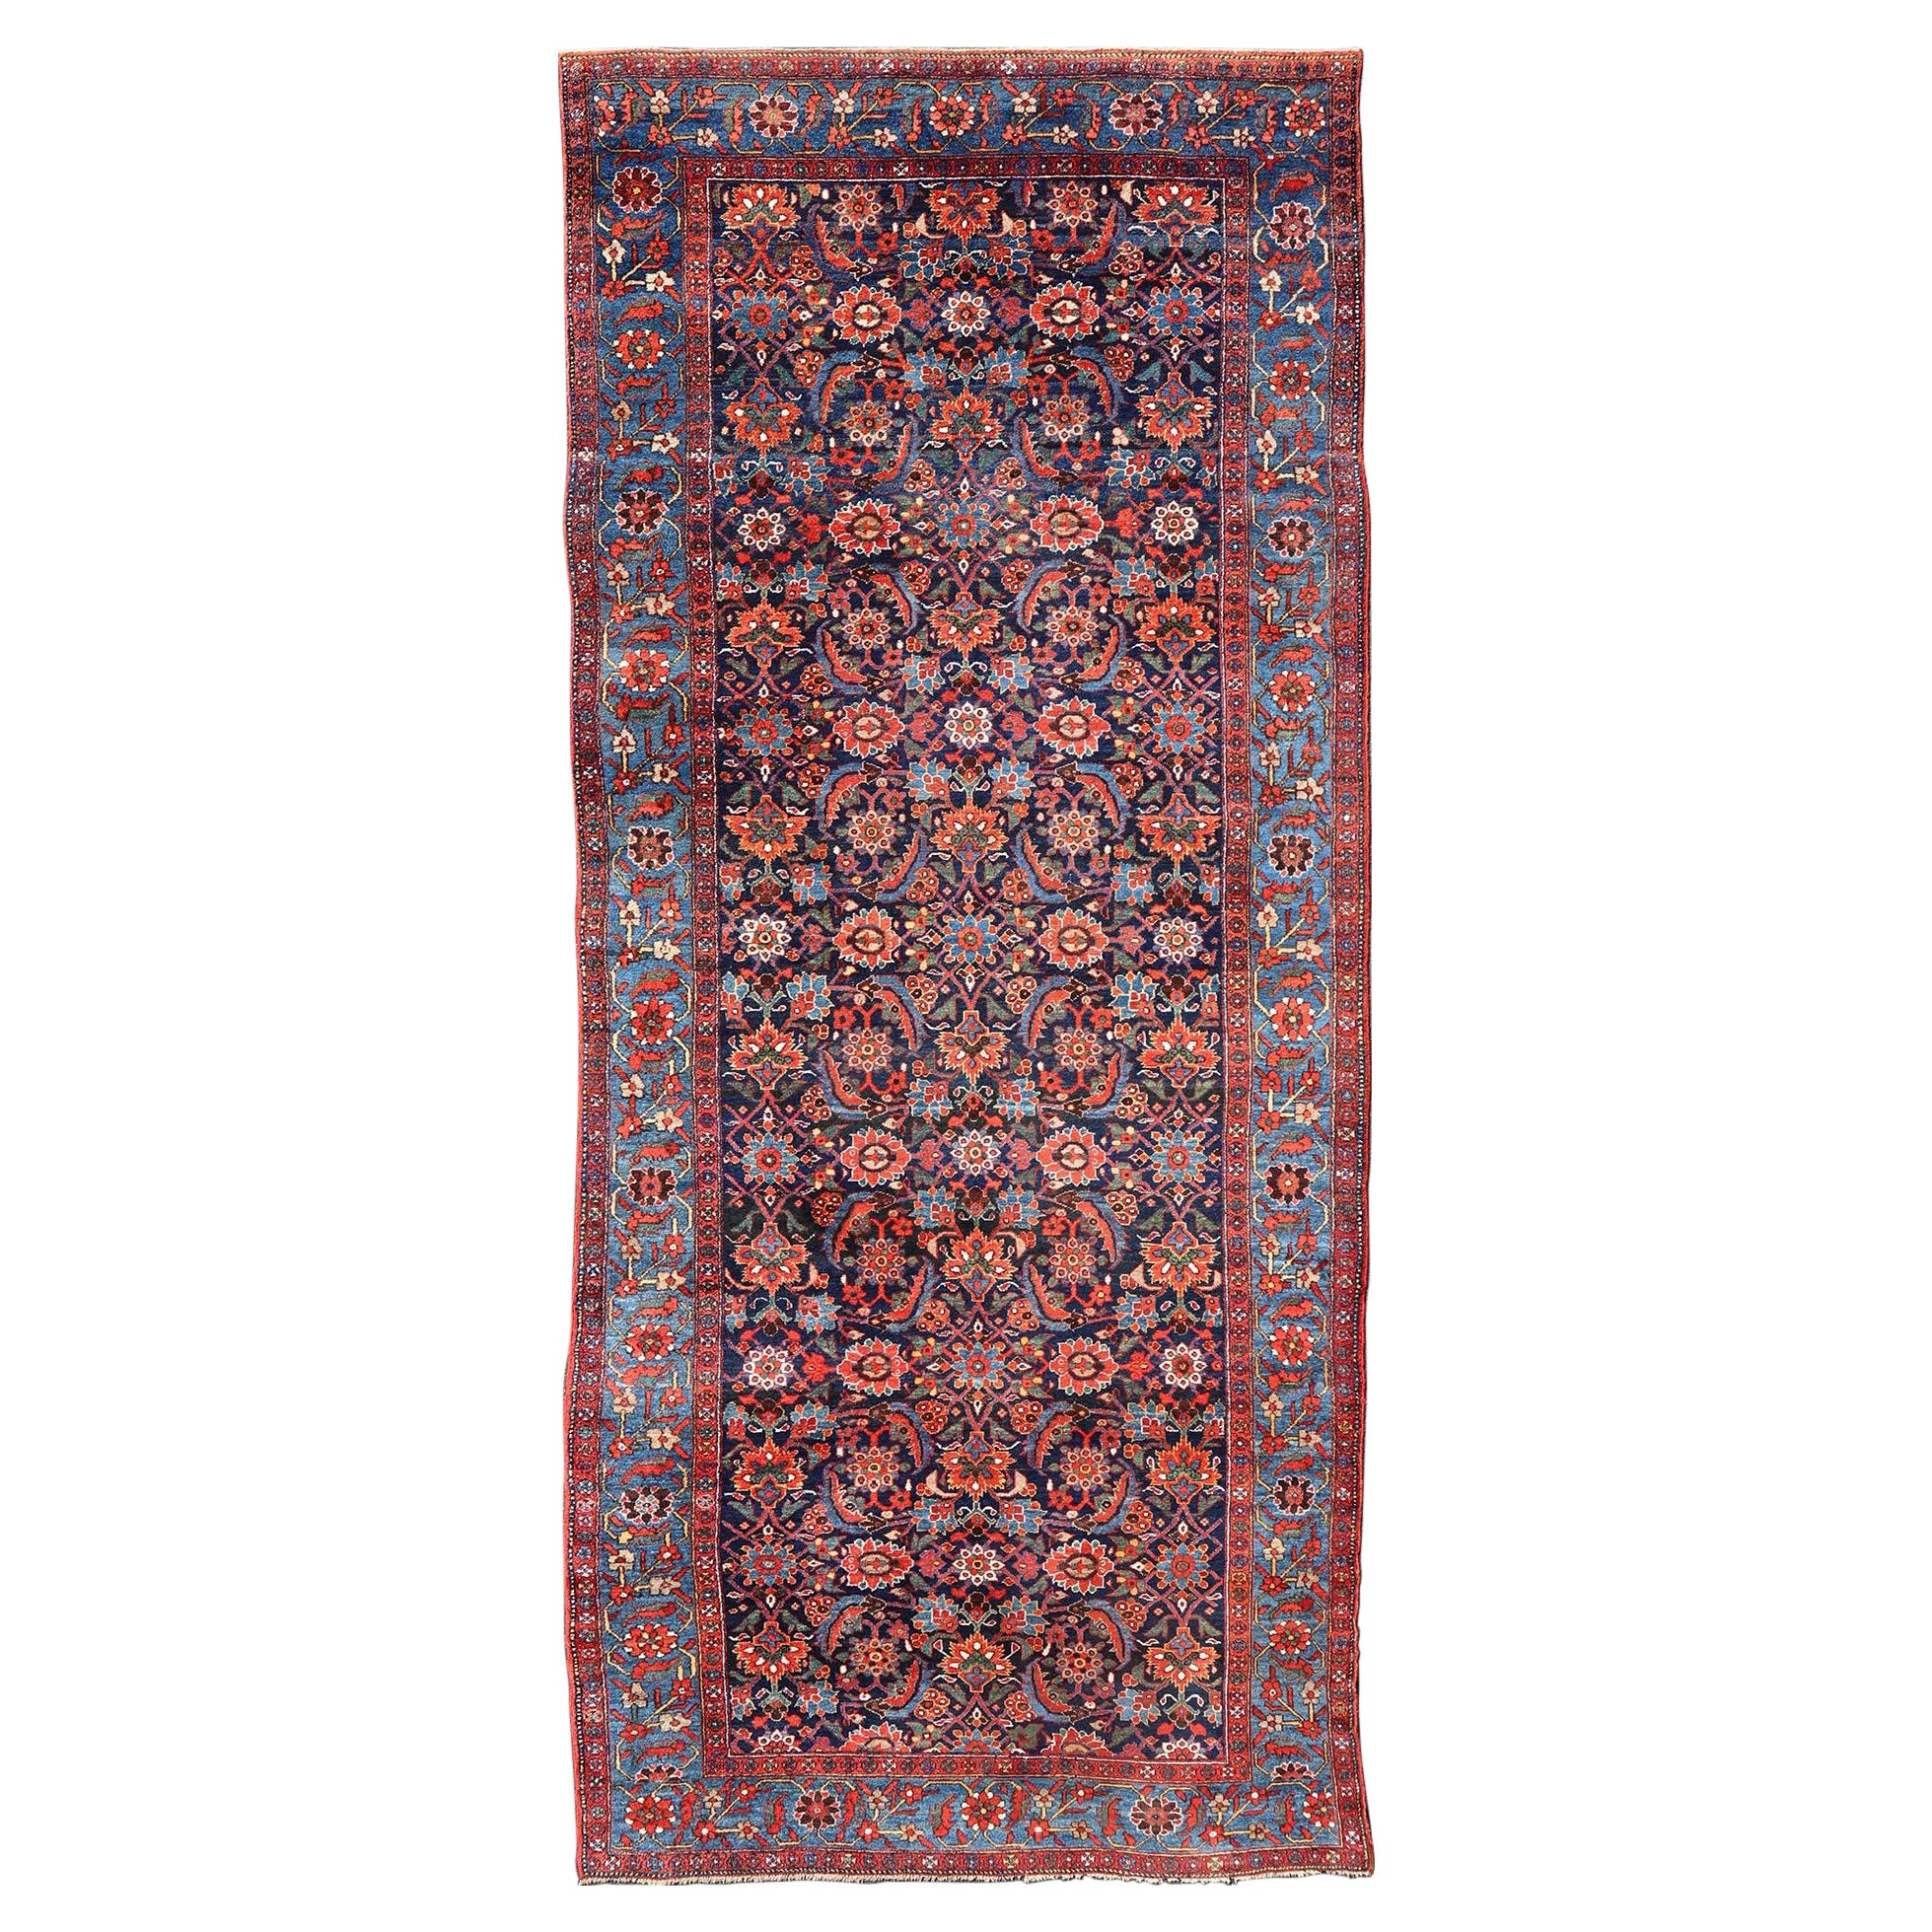 Antiker persischer Hamadan-Galerie-Teppich aus fein gewebtem Gewebe in Rot, Blau, Grün und Elfenbein